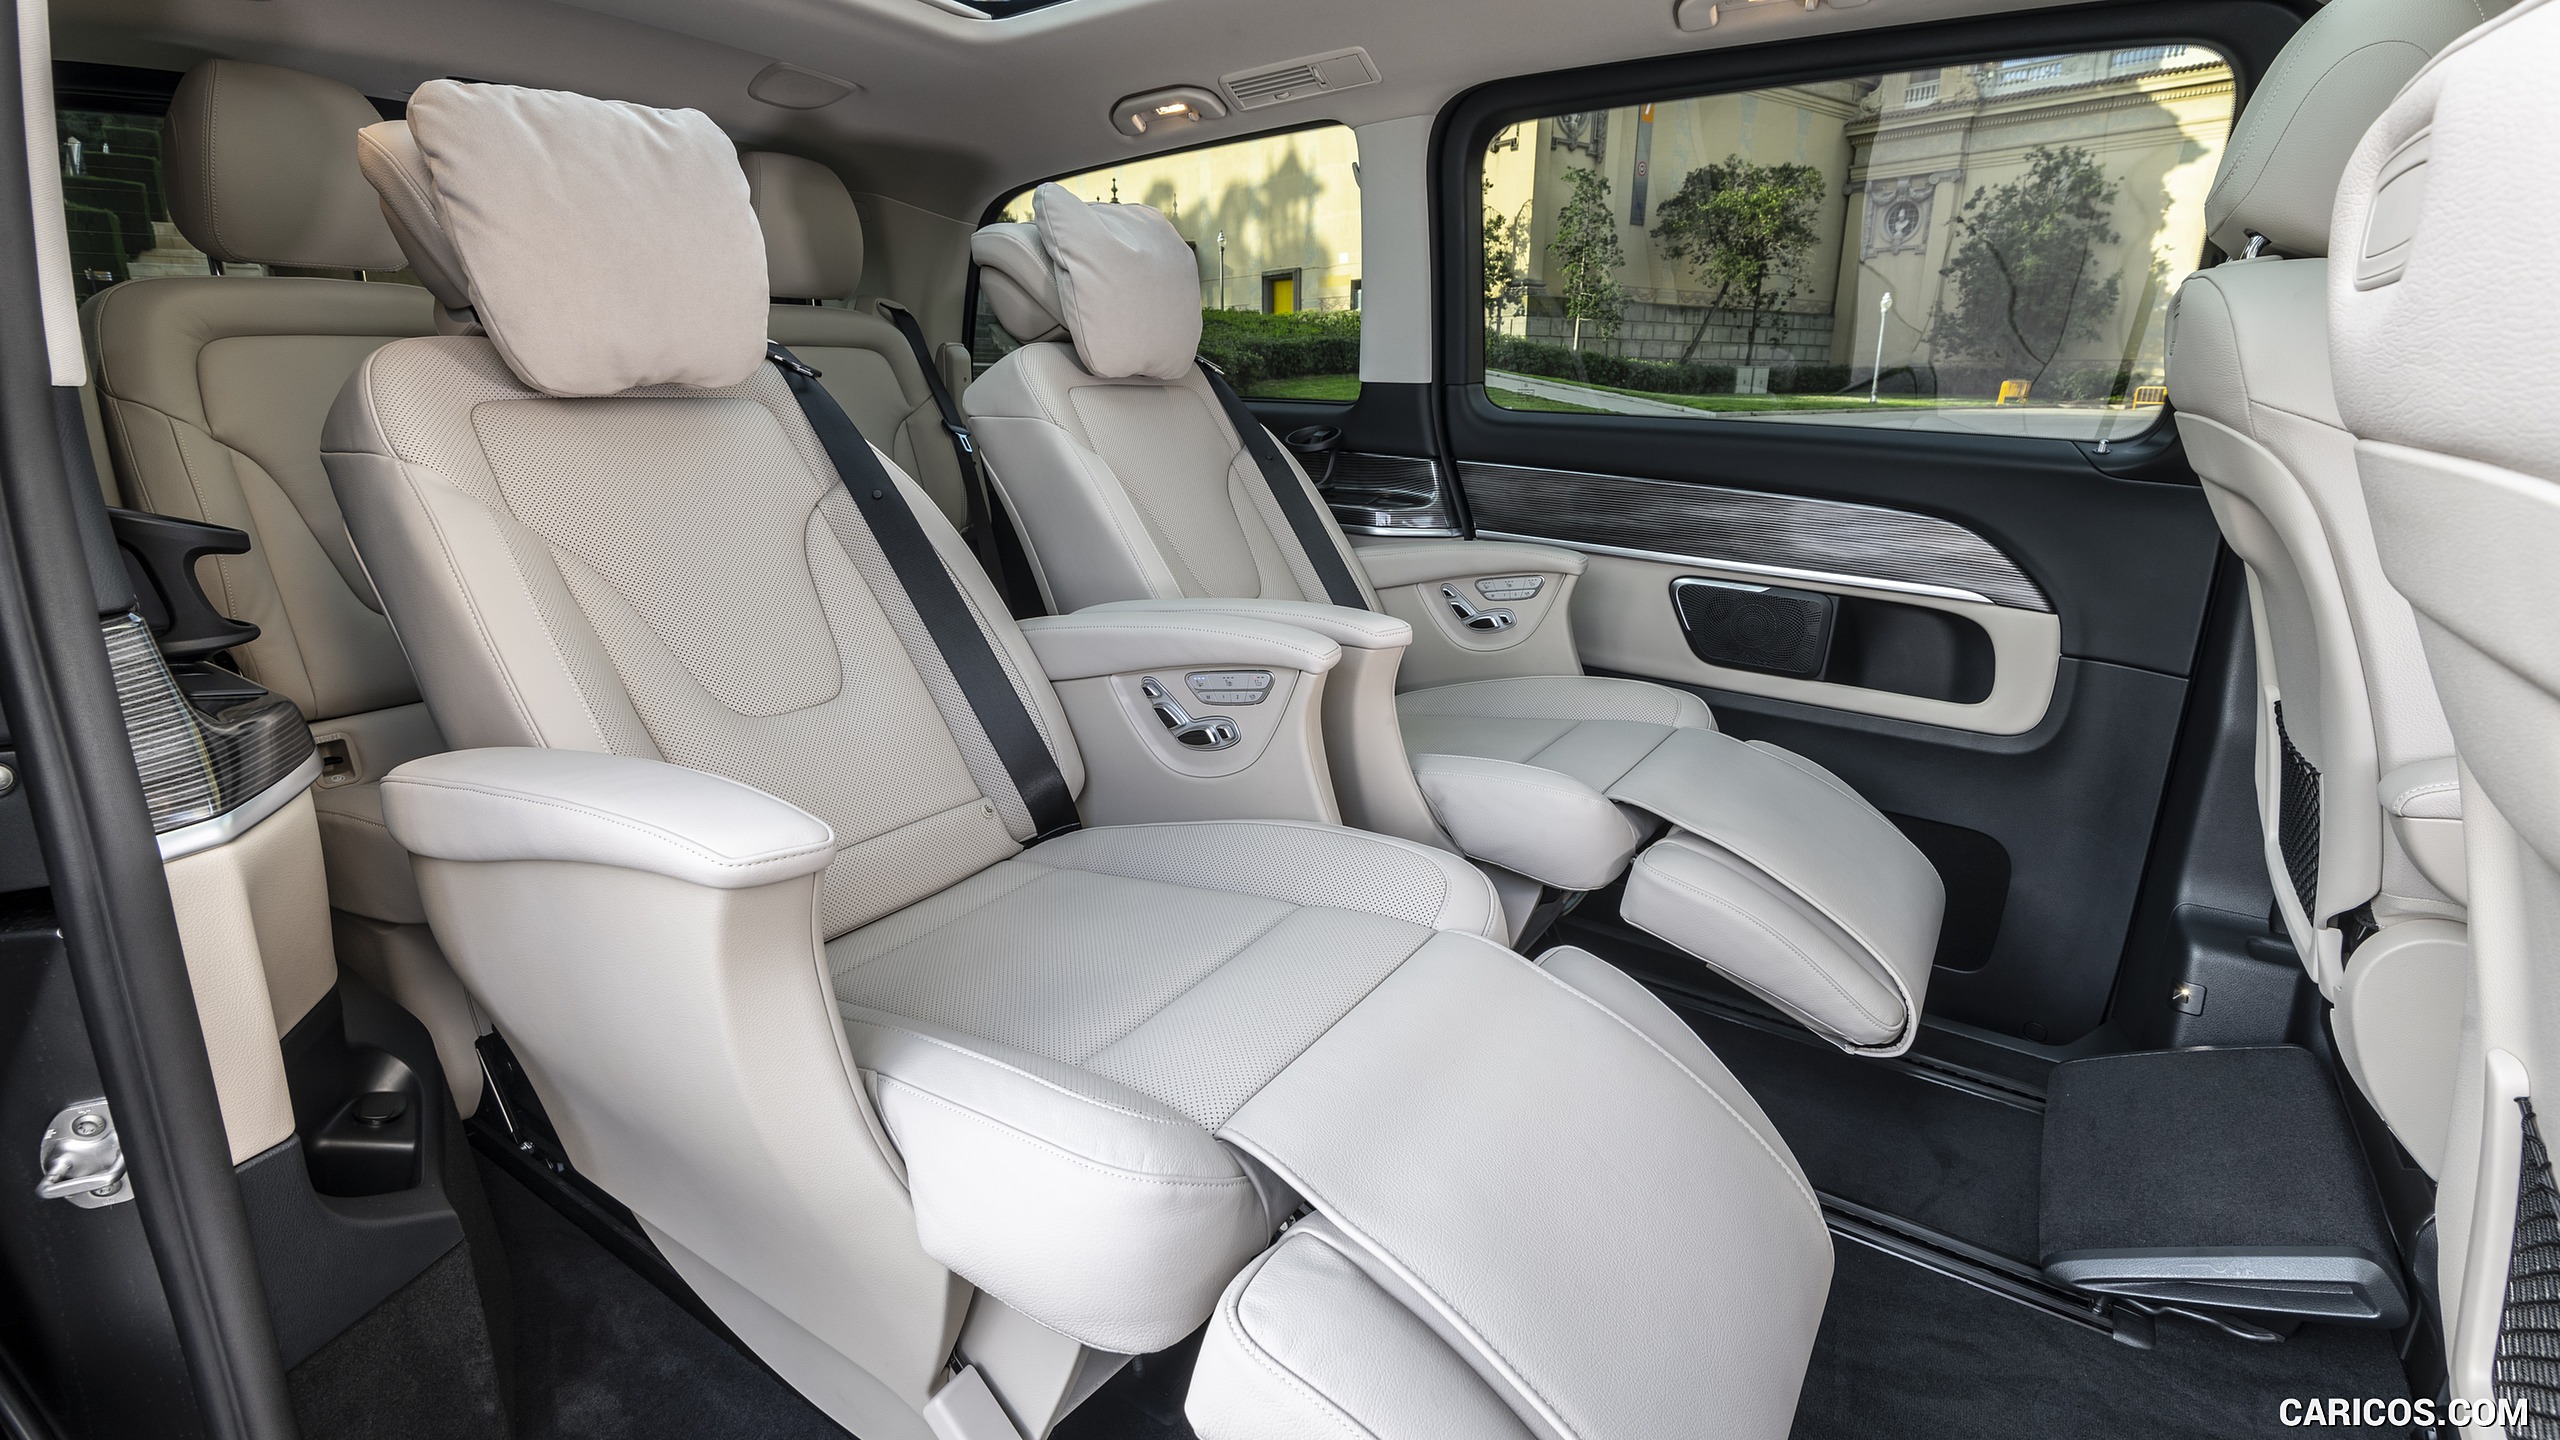 2019 Mercedes-Benz V-Class V300d AVANTGARDE - Interior, Rear Seats, #117 of 216